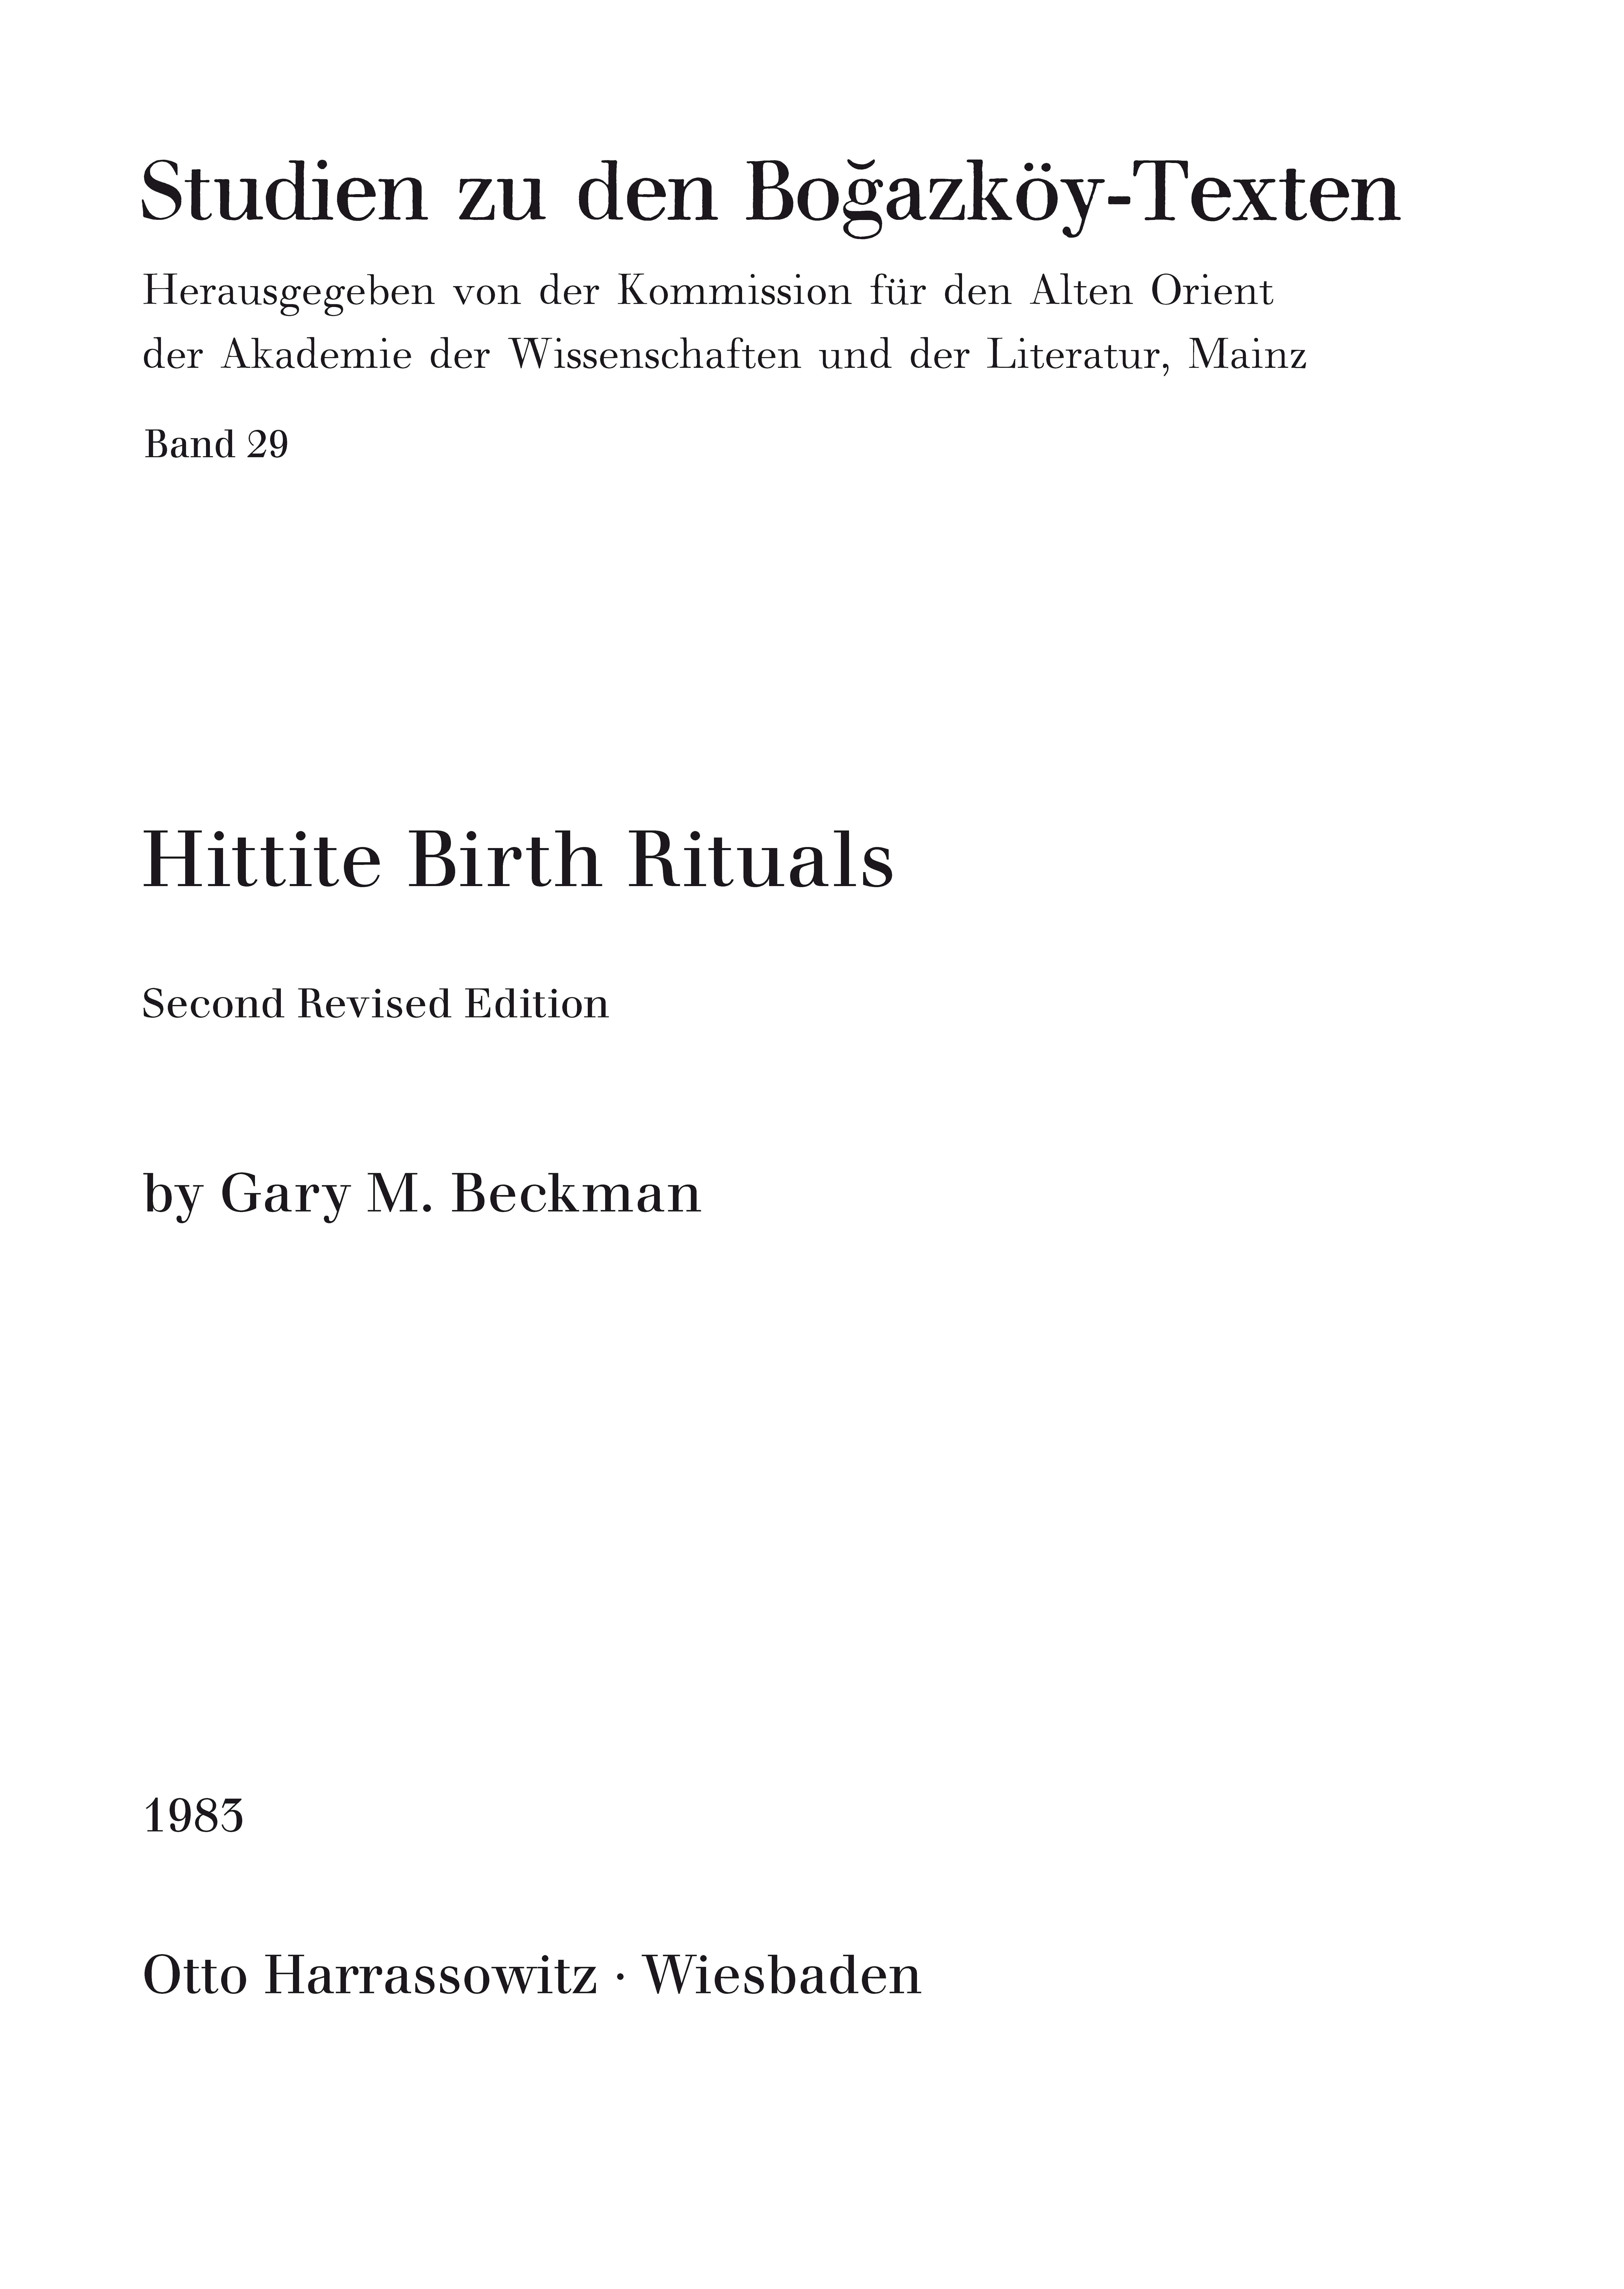 Hittite Birth Rituals - Beckmann, Gary M